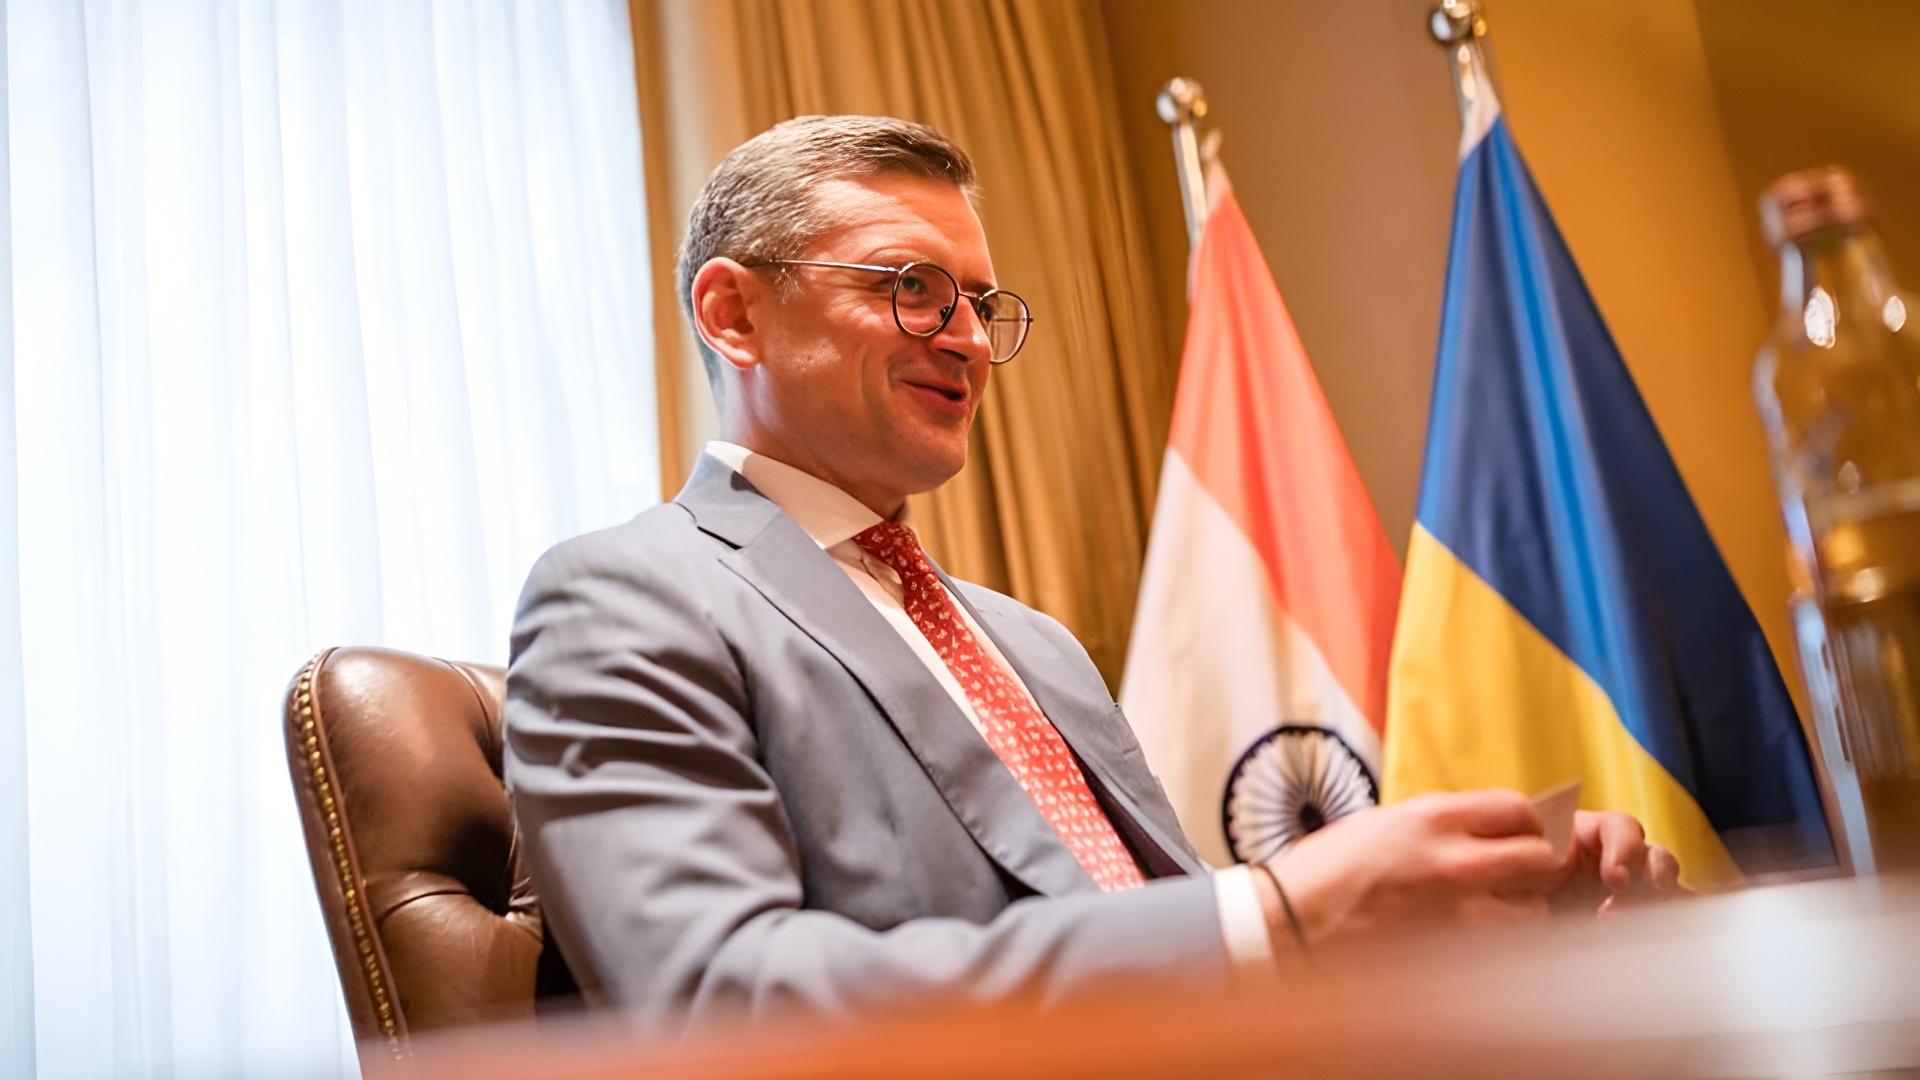 "Criamos um cardápio": Chanceler ucraniano fala sobre a "fórmula de paz" de Zelensky